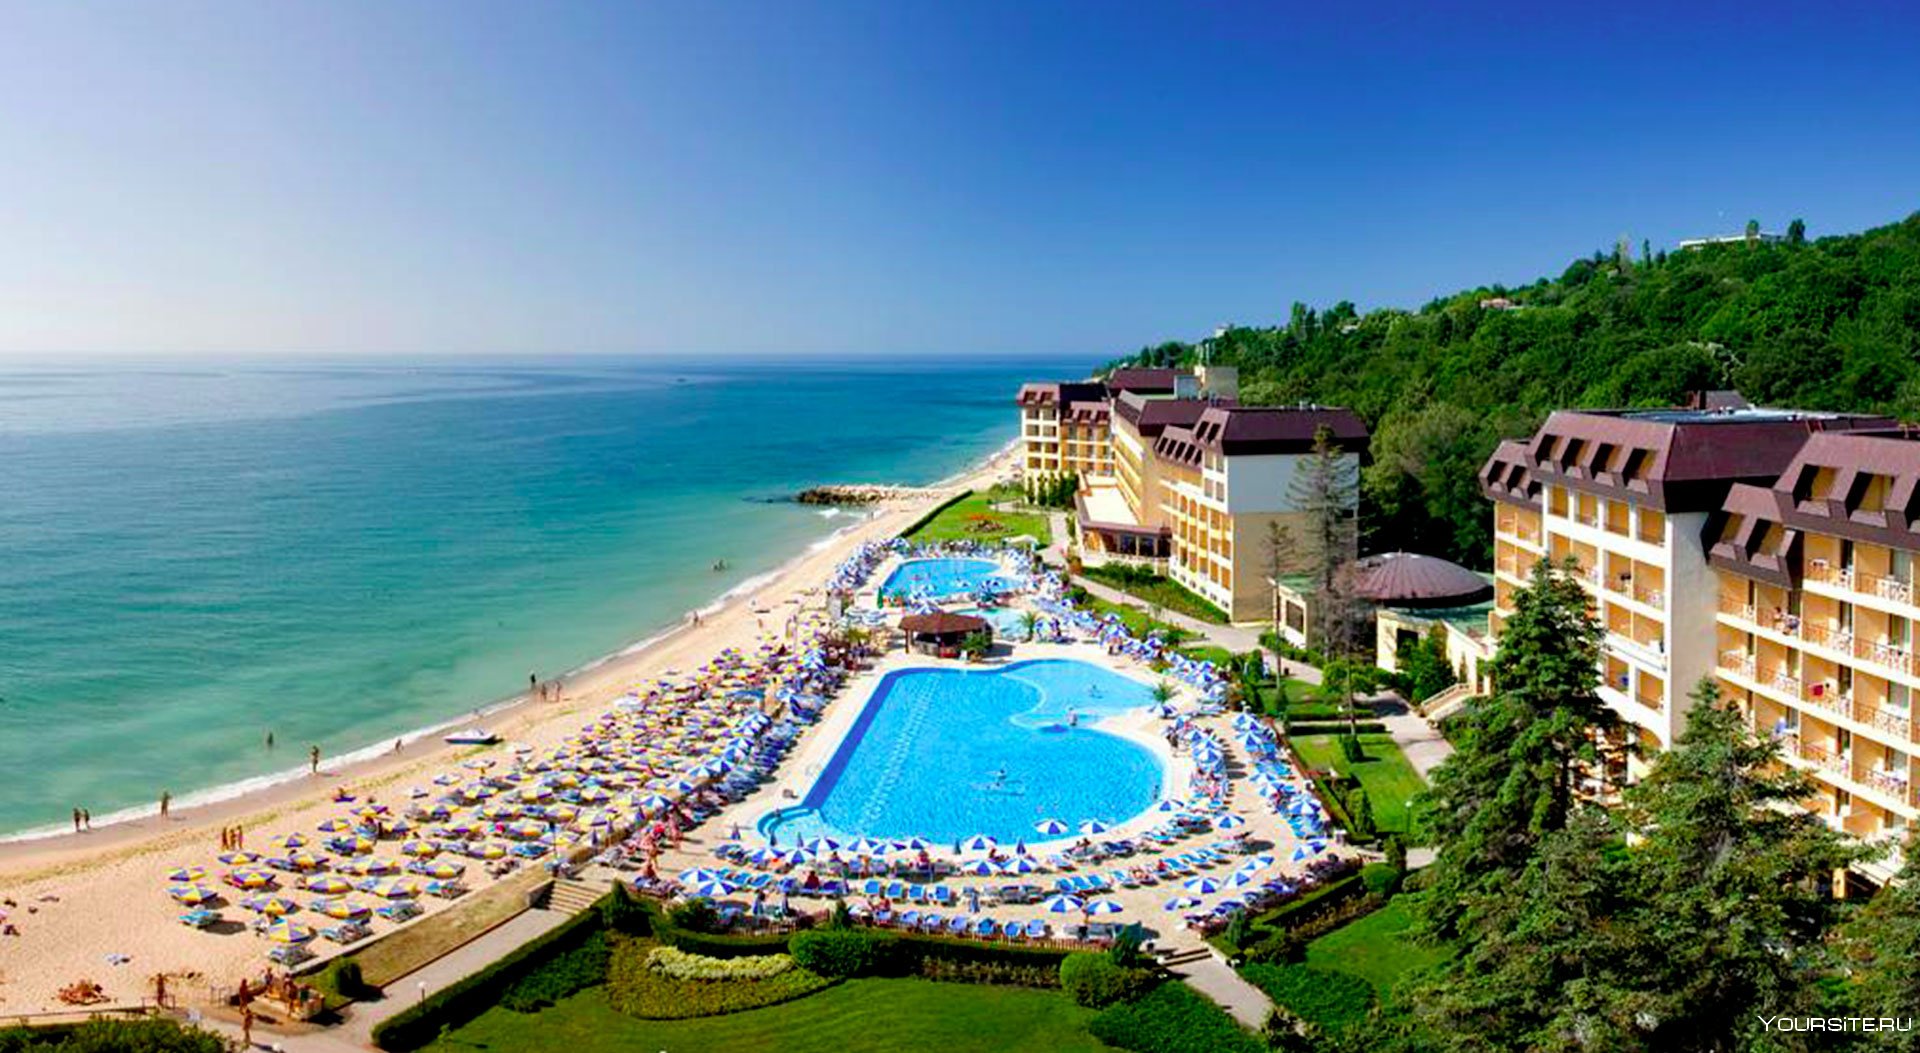 Отдых в болгарии летом: лучшие курорты болгарии. где отдохнуть недорого, погода, цены и отзывы